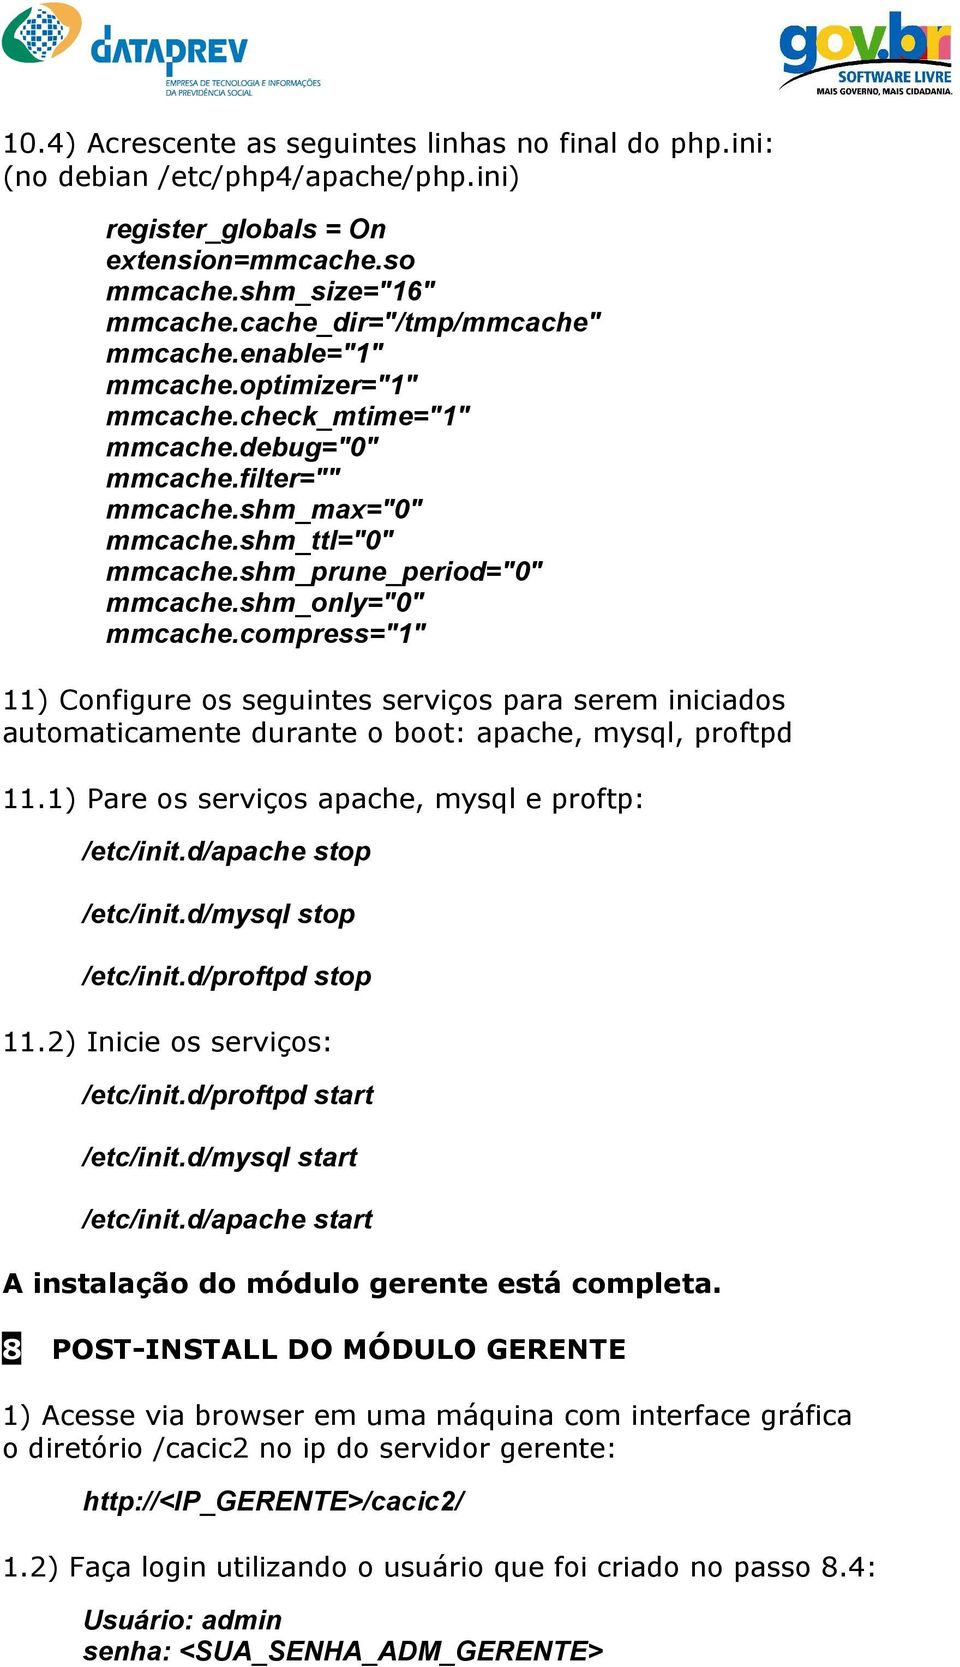 shm_prune_period="0" mmcache.shm_only="0" mmcache.compress="1" 11) Configure os seguintes serviços para serem iniciados automaticamente durante o boot: apache, mysql, proftpd 11.